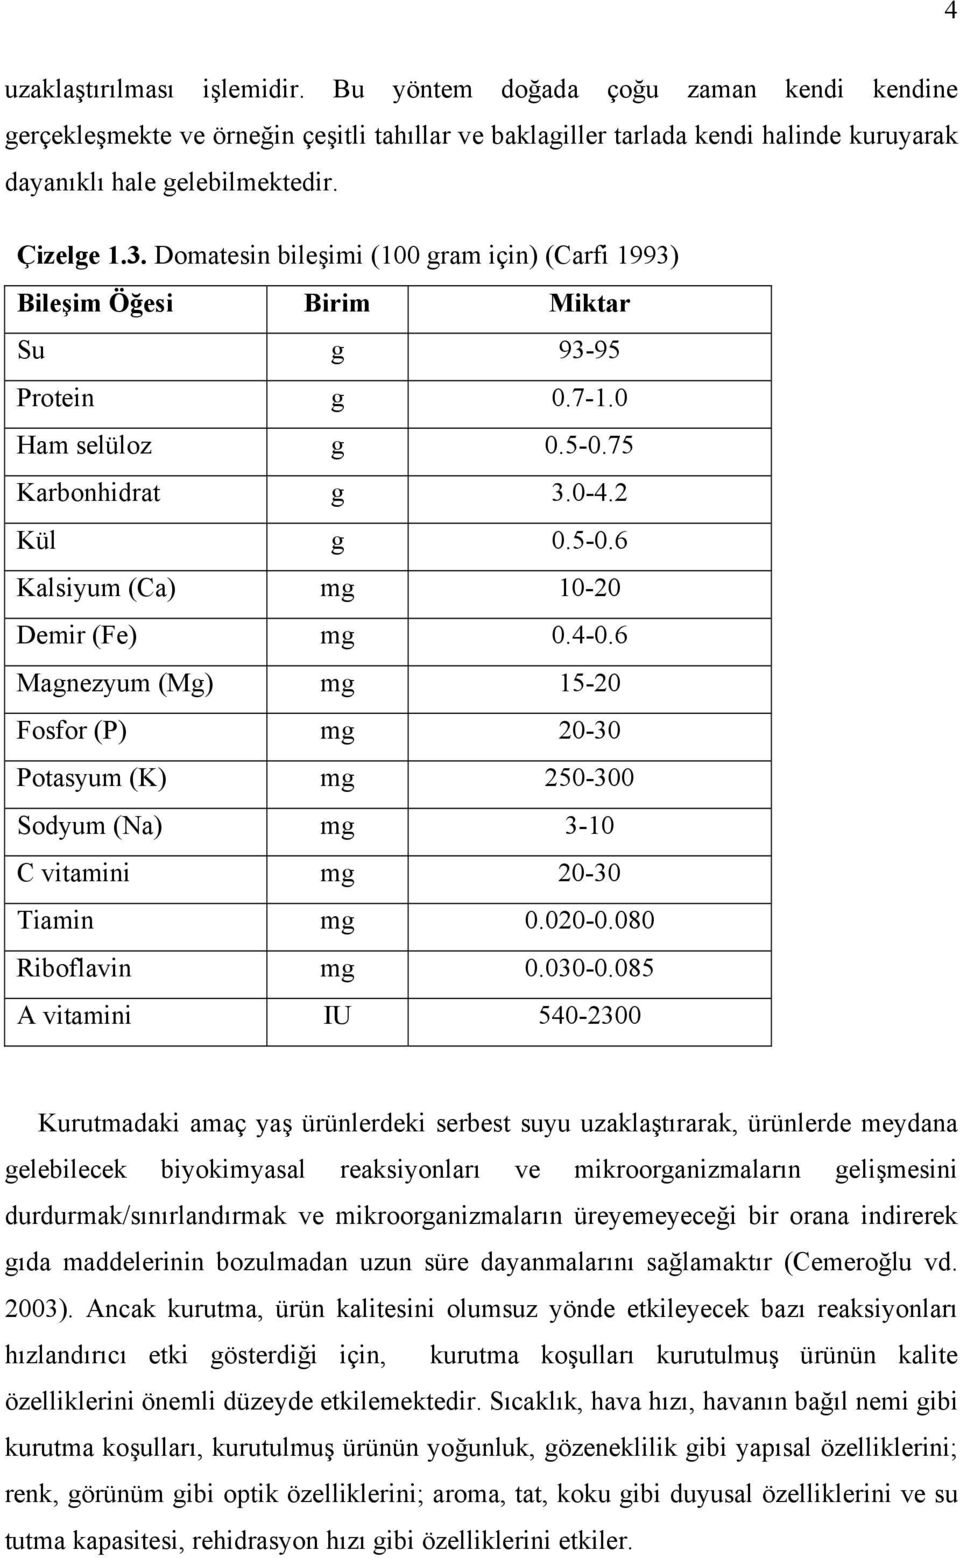 4-0.6 Magnezyum (Mg) mg 15-20 Fosfor (P) mg 20-30 Potasyum (K) mg 250-300 Sodyum (Na) mg 3-10 C vitamini mg 20-30 Tiamin mg 0.020-0.080 Riboflavin mg 0.030-0.